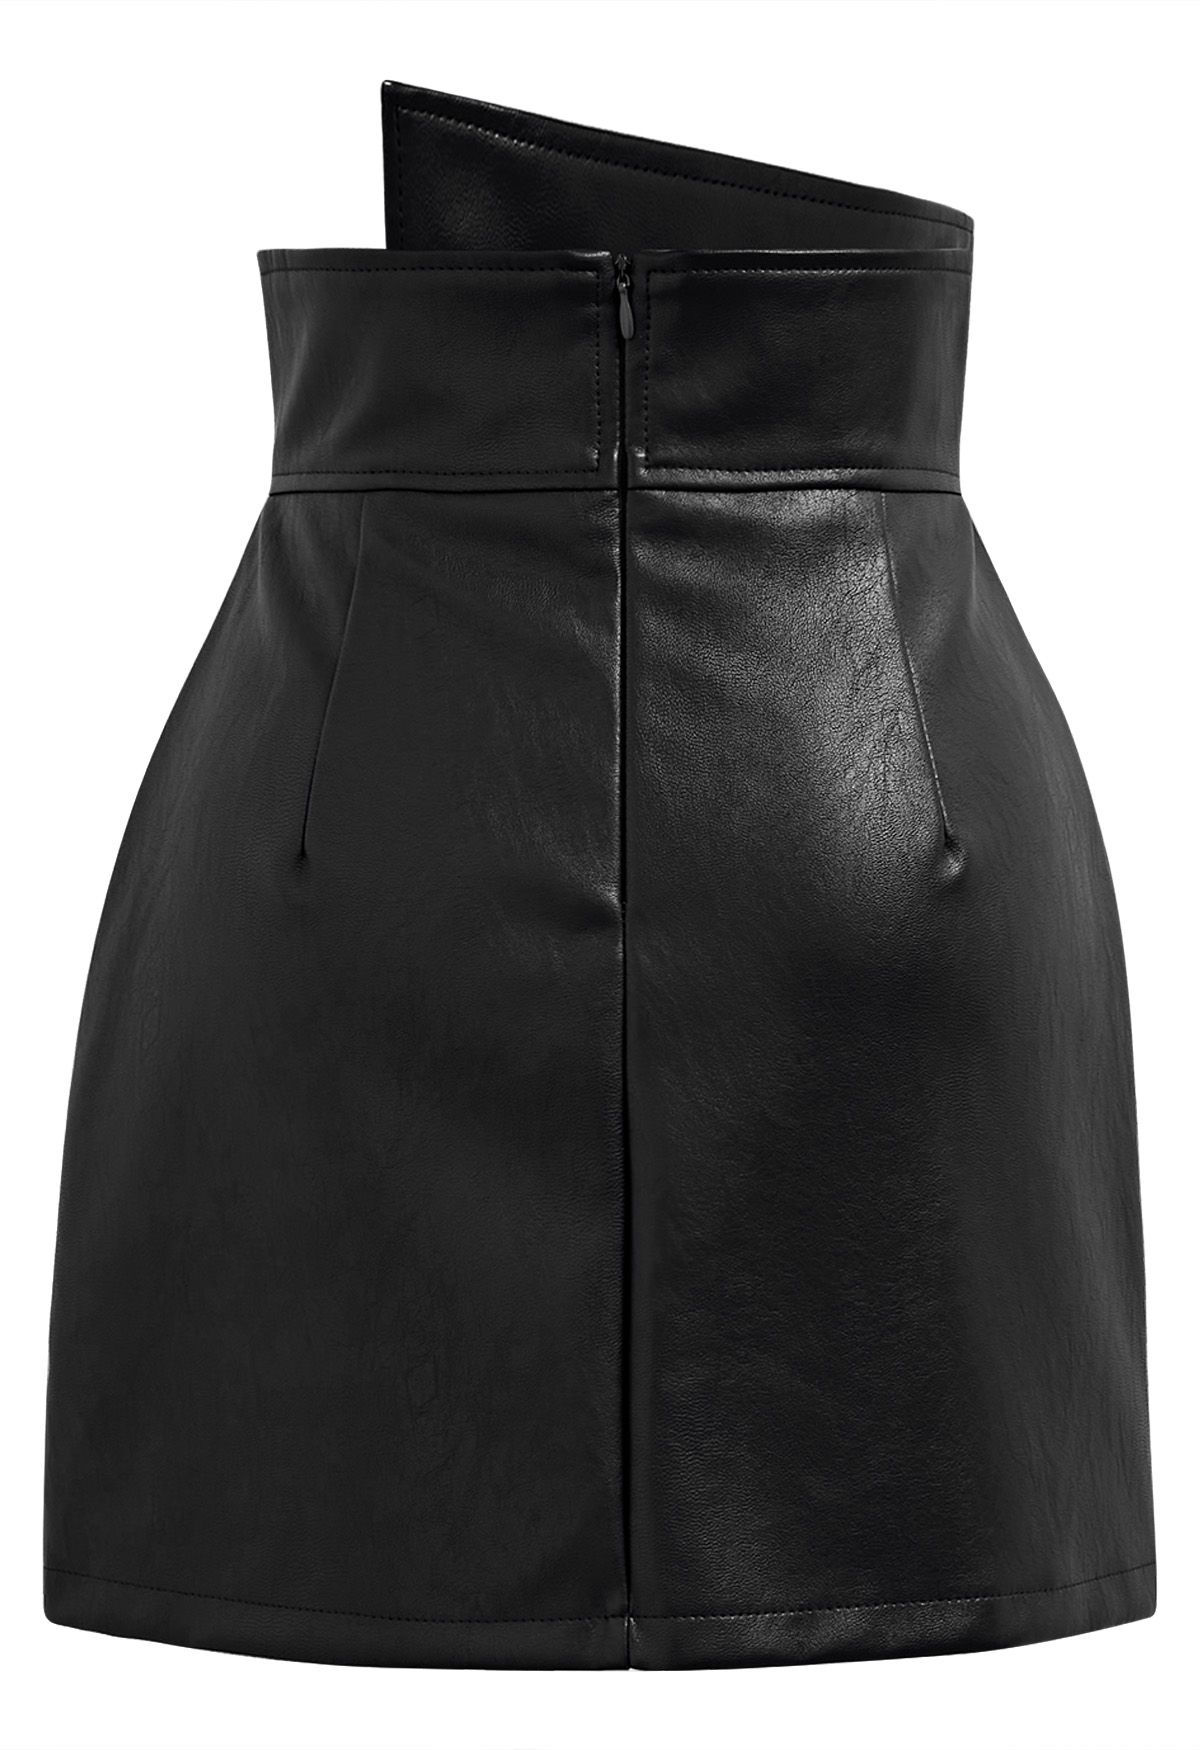 Minifalda asimétrica con solapa y botones de piel sintética en negro